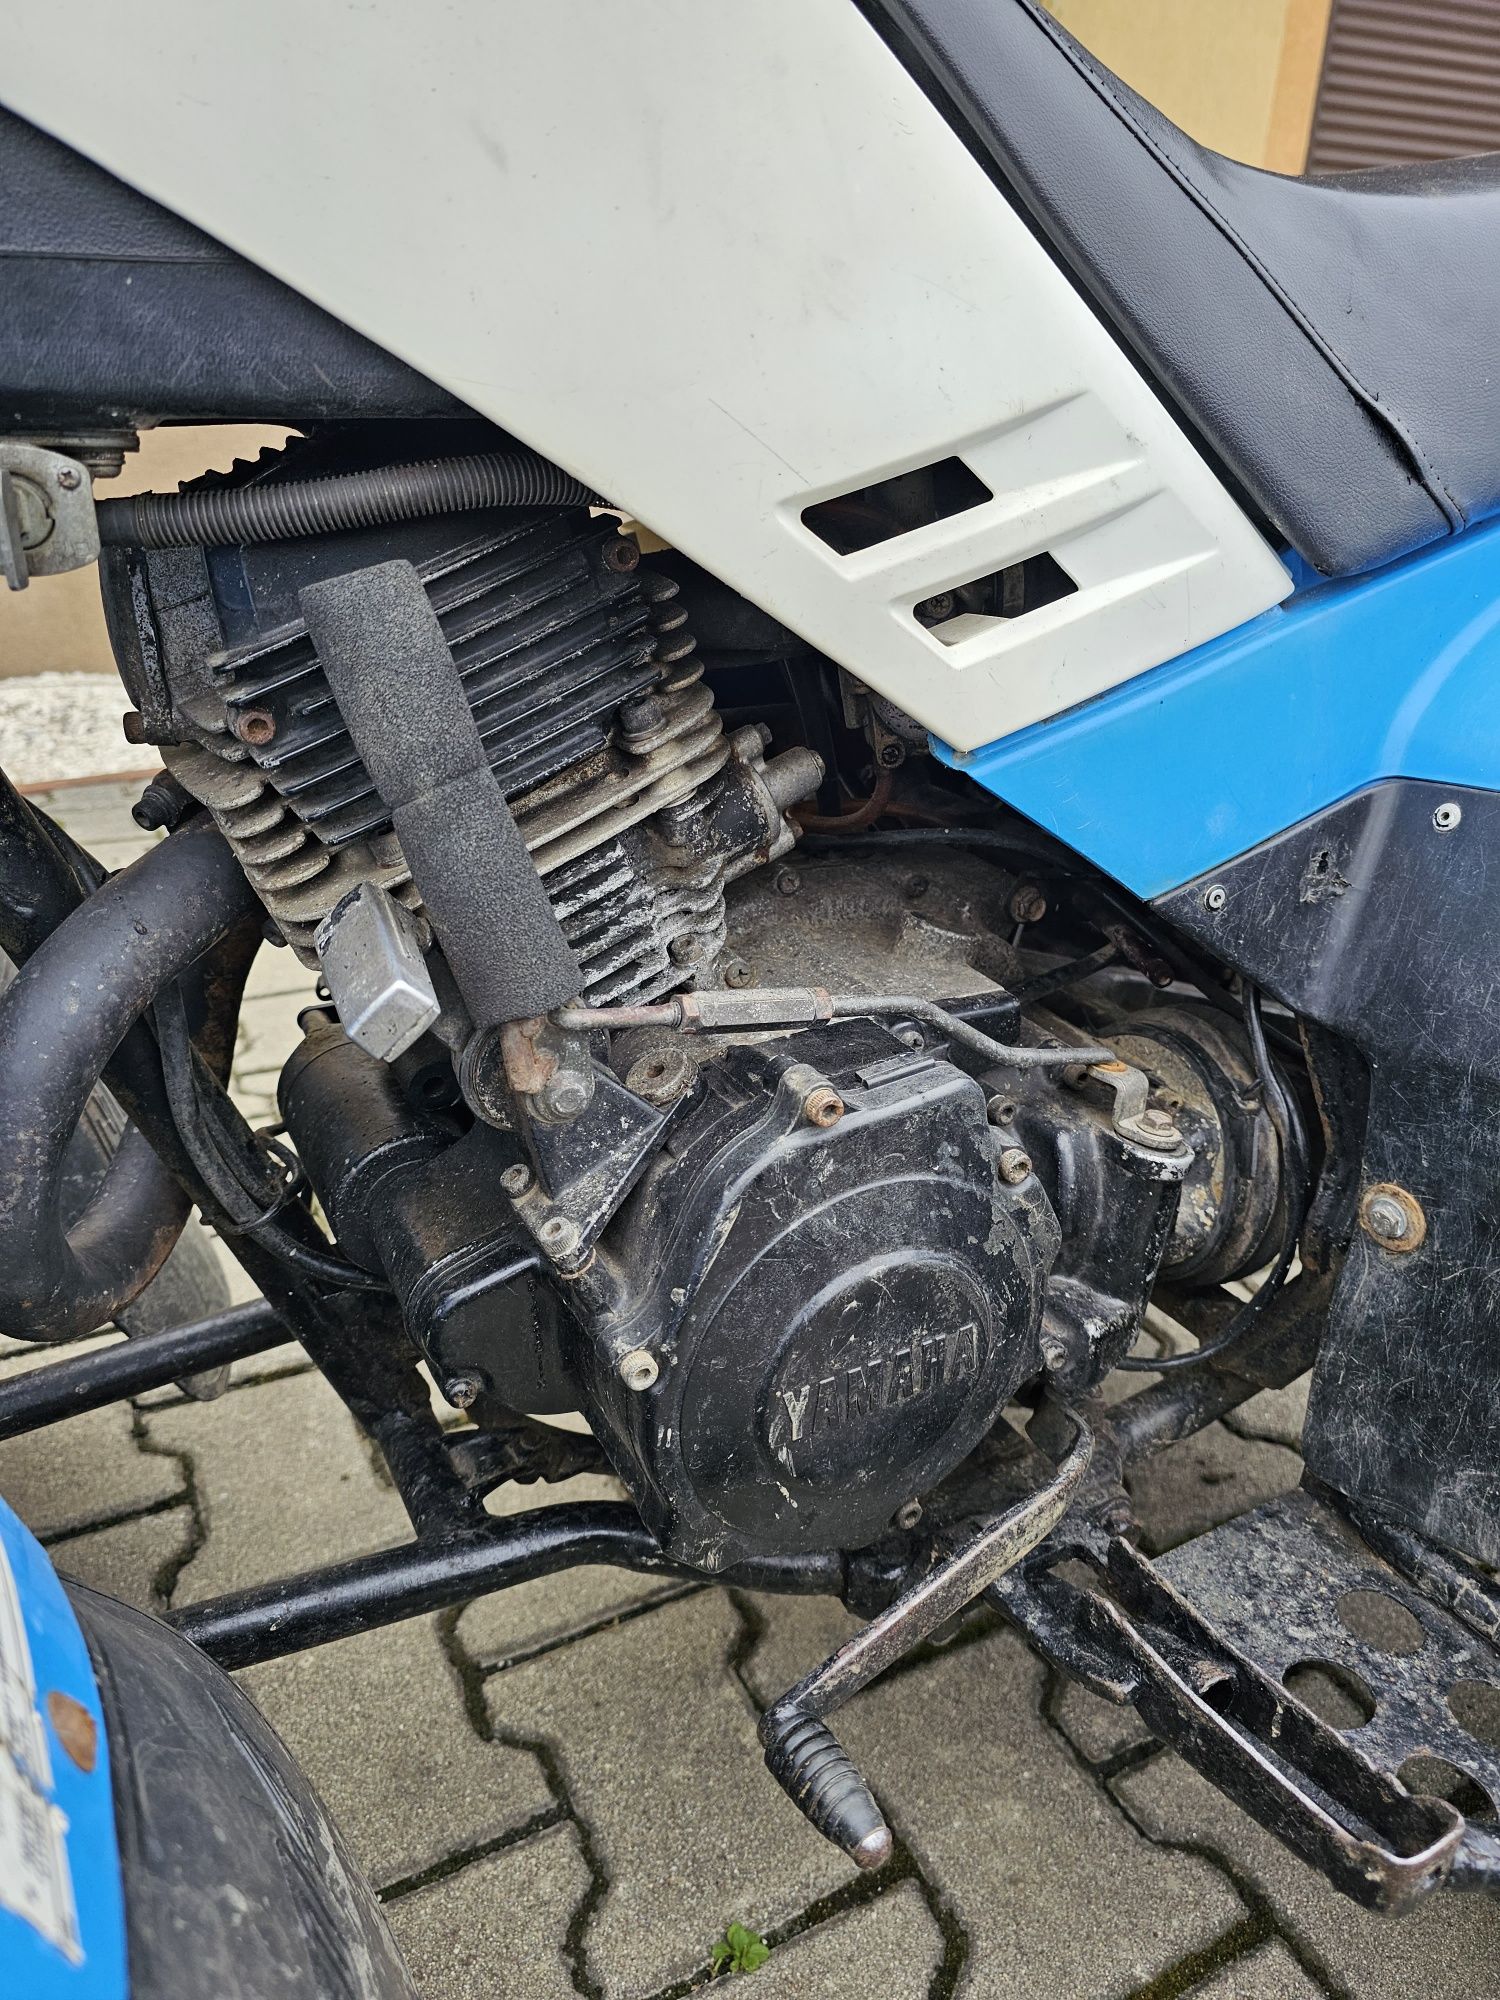 Yamaha Moto4 yfm200